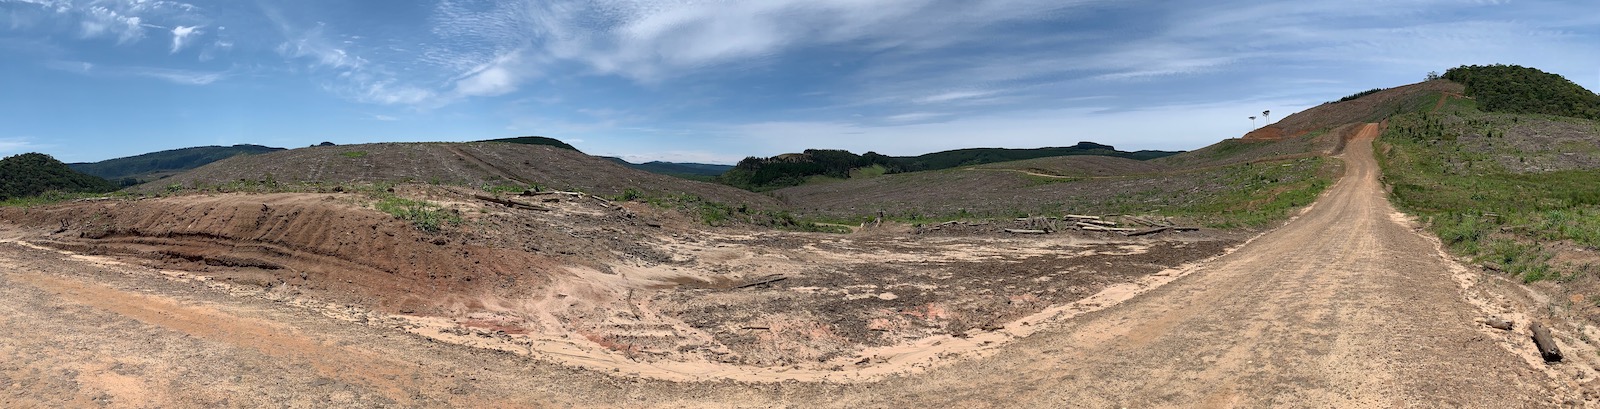 Figura 5: Paisagem estilo "terra arrasada" proporcionada pelo reflorestamento recém-colhido, em algum lugar entre Canoinhas e Timbó Grande.